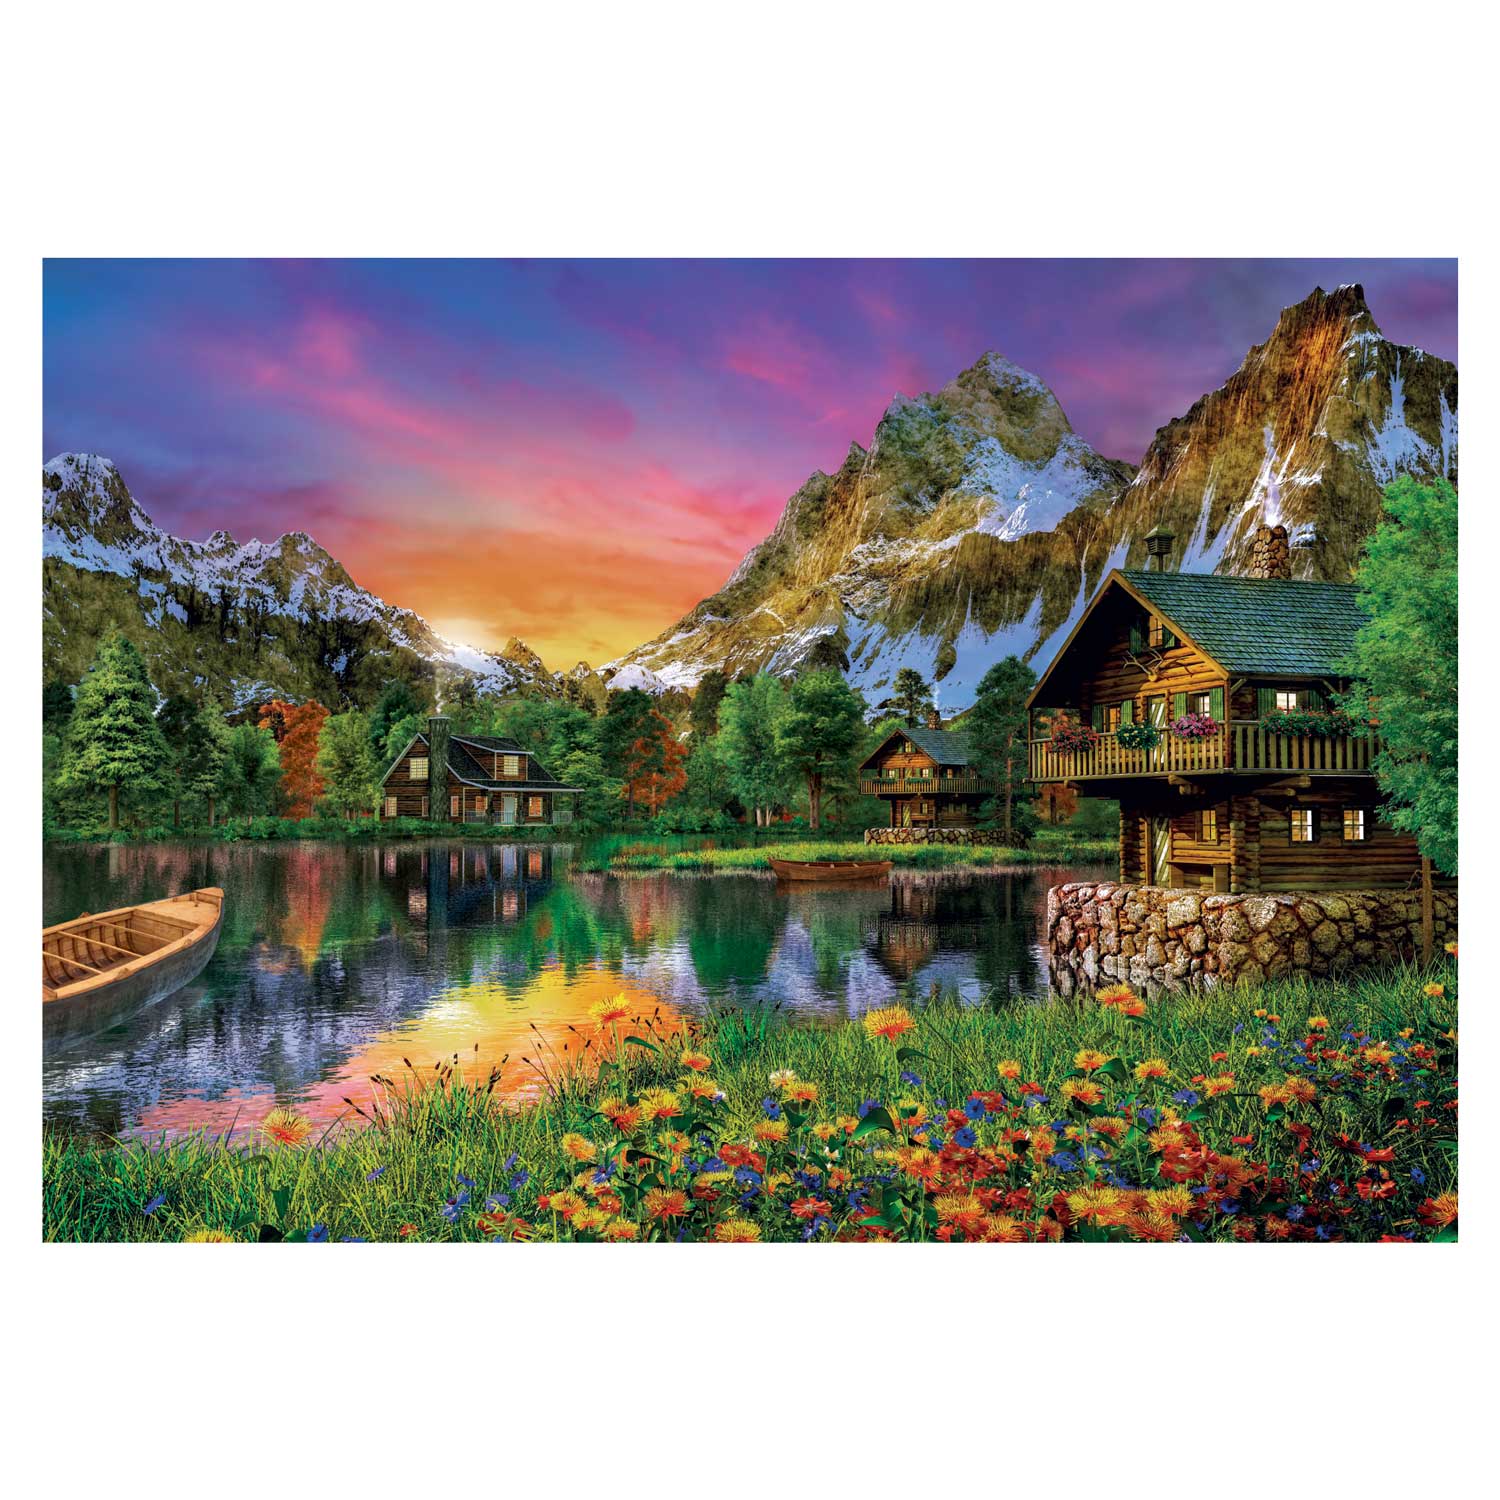 Clementoni Puzzle Lac Alpin, 6000pcs.